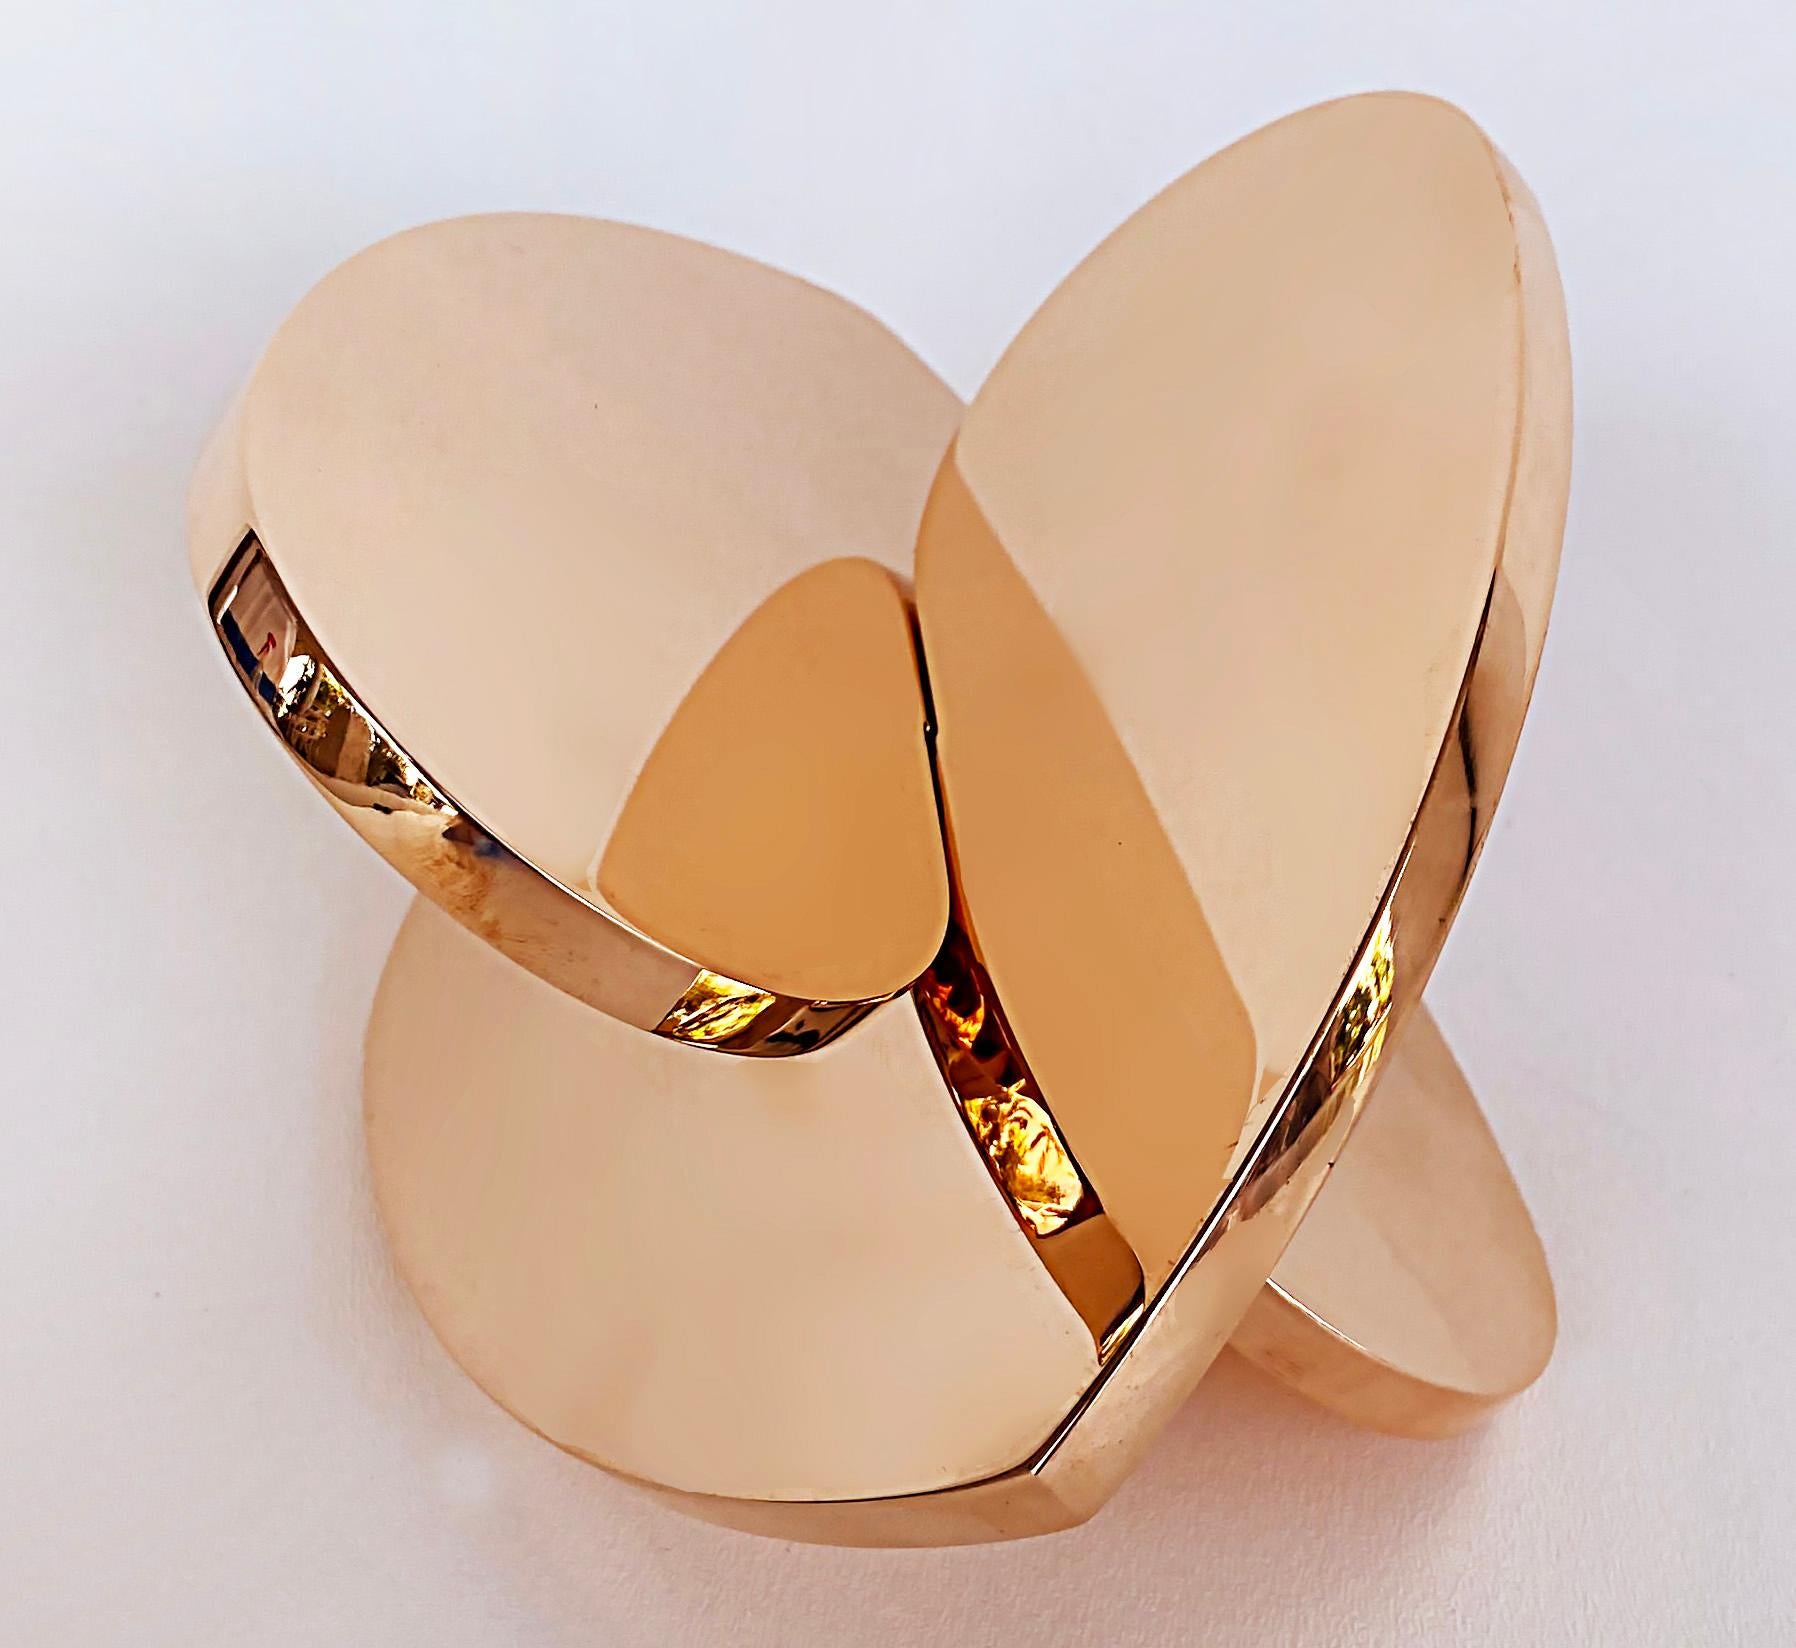 Copper Interlocking Heart Sculptures Michael Gitter & Phu Truong, Solid 1